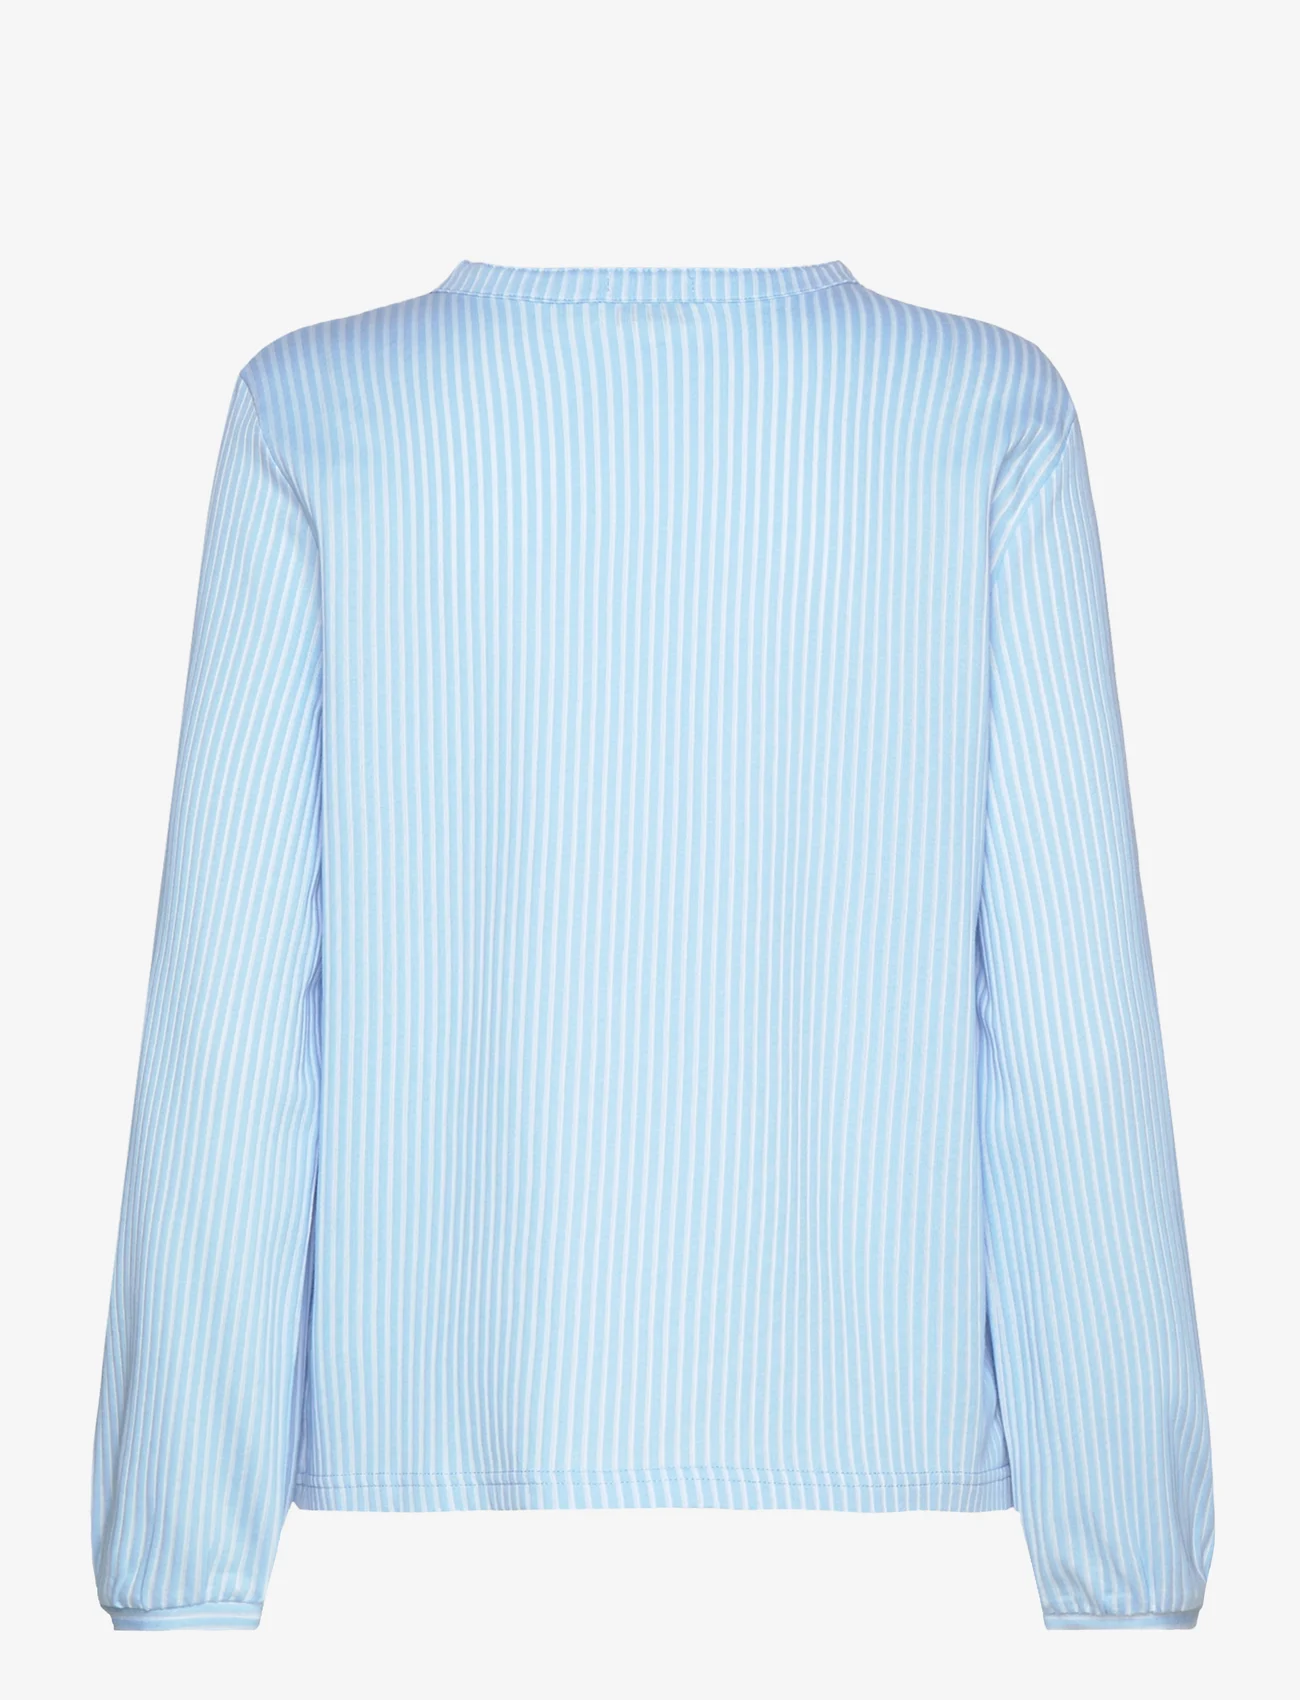 Tom Tailor - T-shirt blouse vertical stripe - palaidinės ilgomis rankovėmis - blue white thin stripe - 1